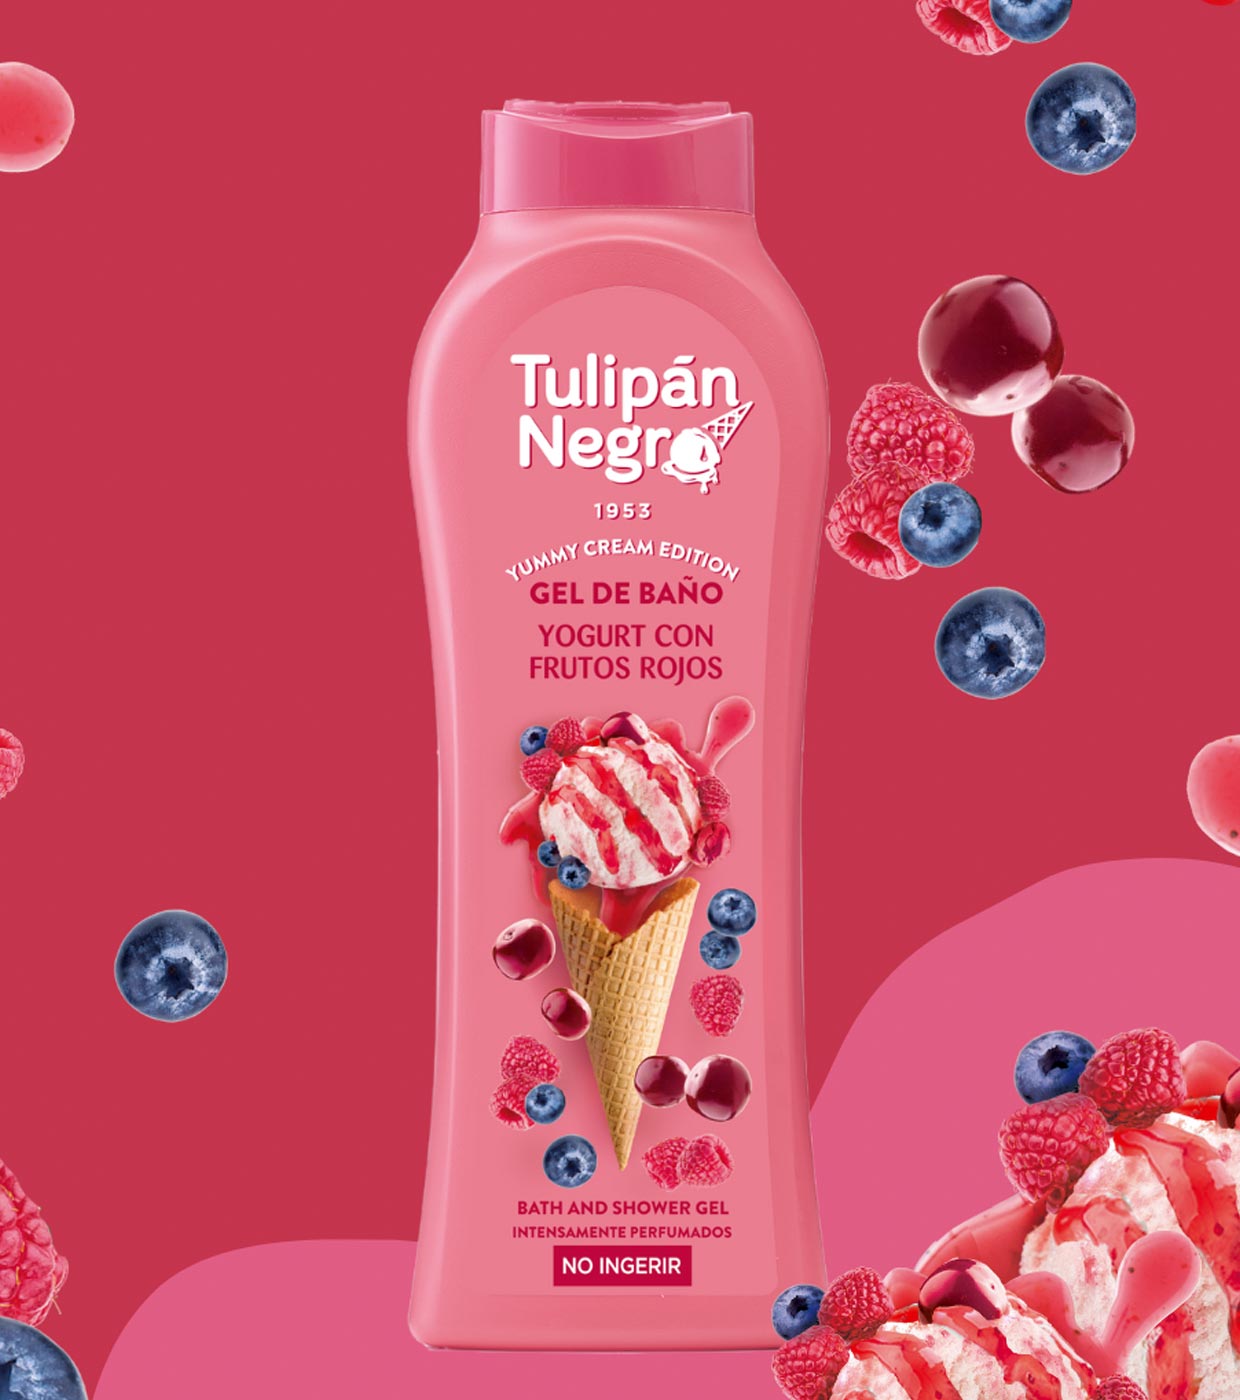 Tulipán Negro - *Yummy Cream Edition* - Gel de baño 650ml - Yogurt con  Frutos Rojos